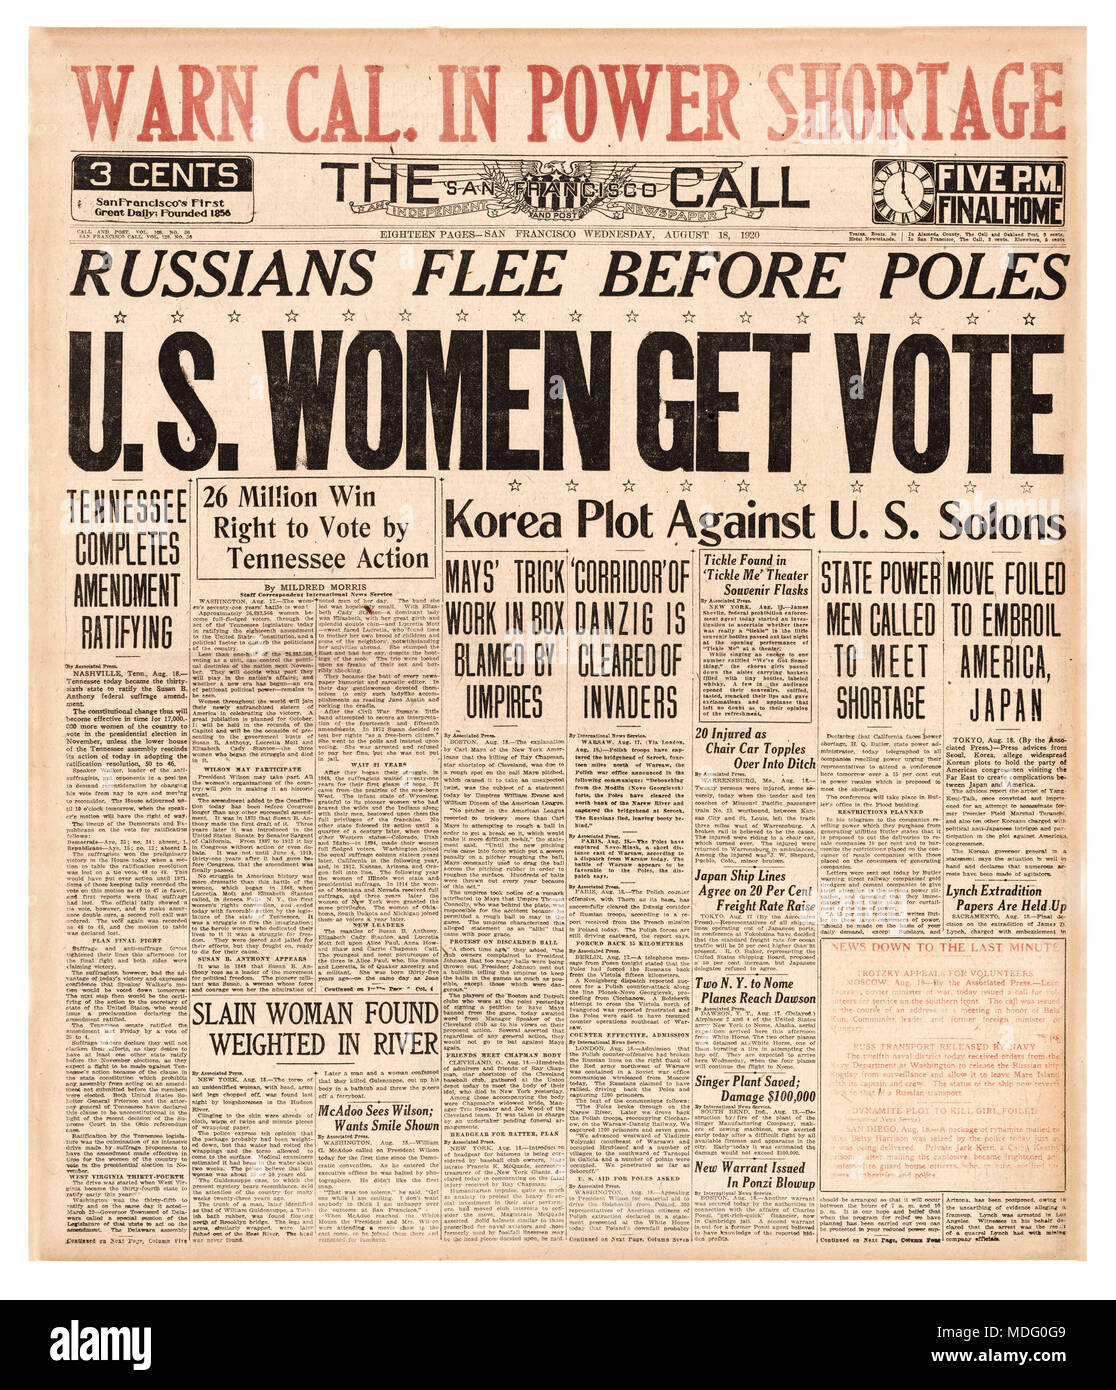 US-FRAUEN ERHALTEN WAHL 19th Amendment Newspaper Schlagzeile Wahlrecht am 18 1920. August Tennessee wurde der 36. Staat, um die 19. Änderung der US-Verfassung zu ratifizieren. Sieben Jahre nach der Wahlkampfparade und 72 Jahre nach Beginn des Kampfes gewannen Frauen in jedem US-Staat schließlich das Wahlrecht. Stockfoto